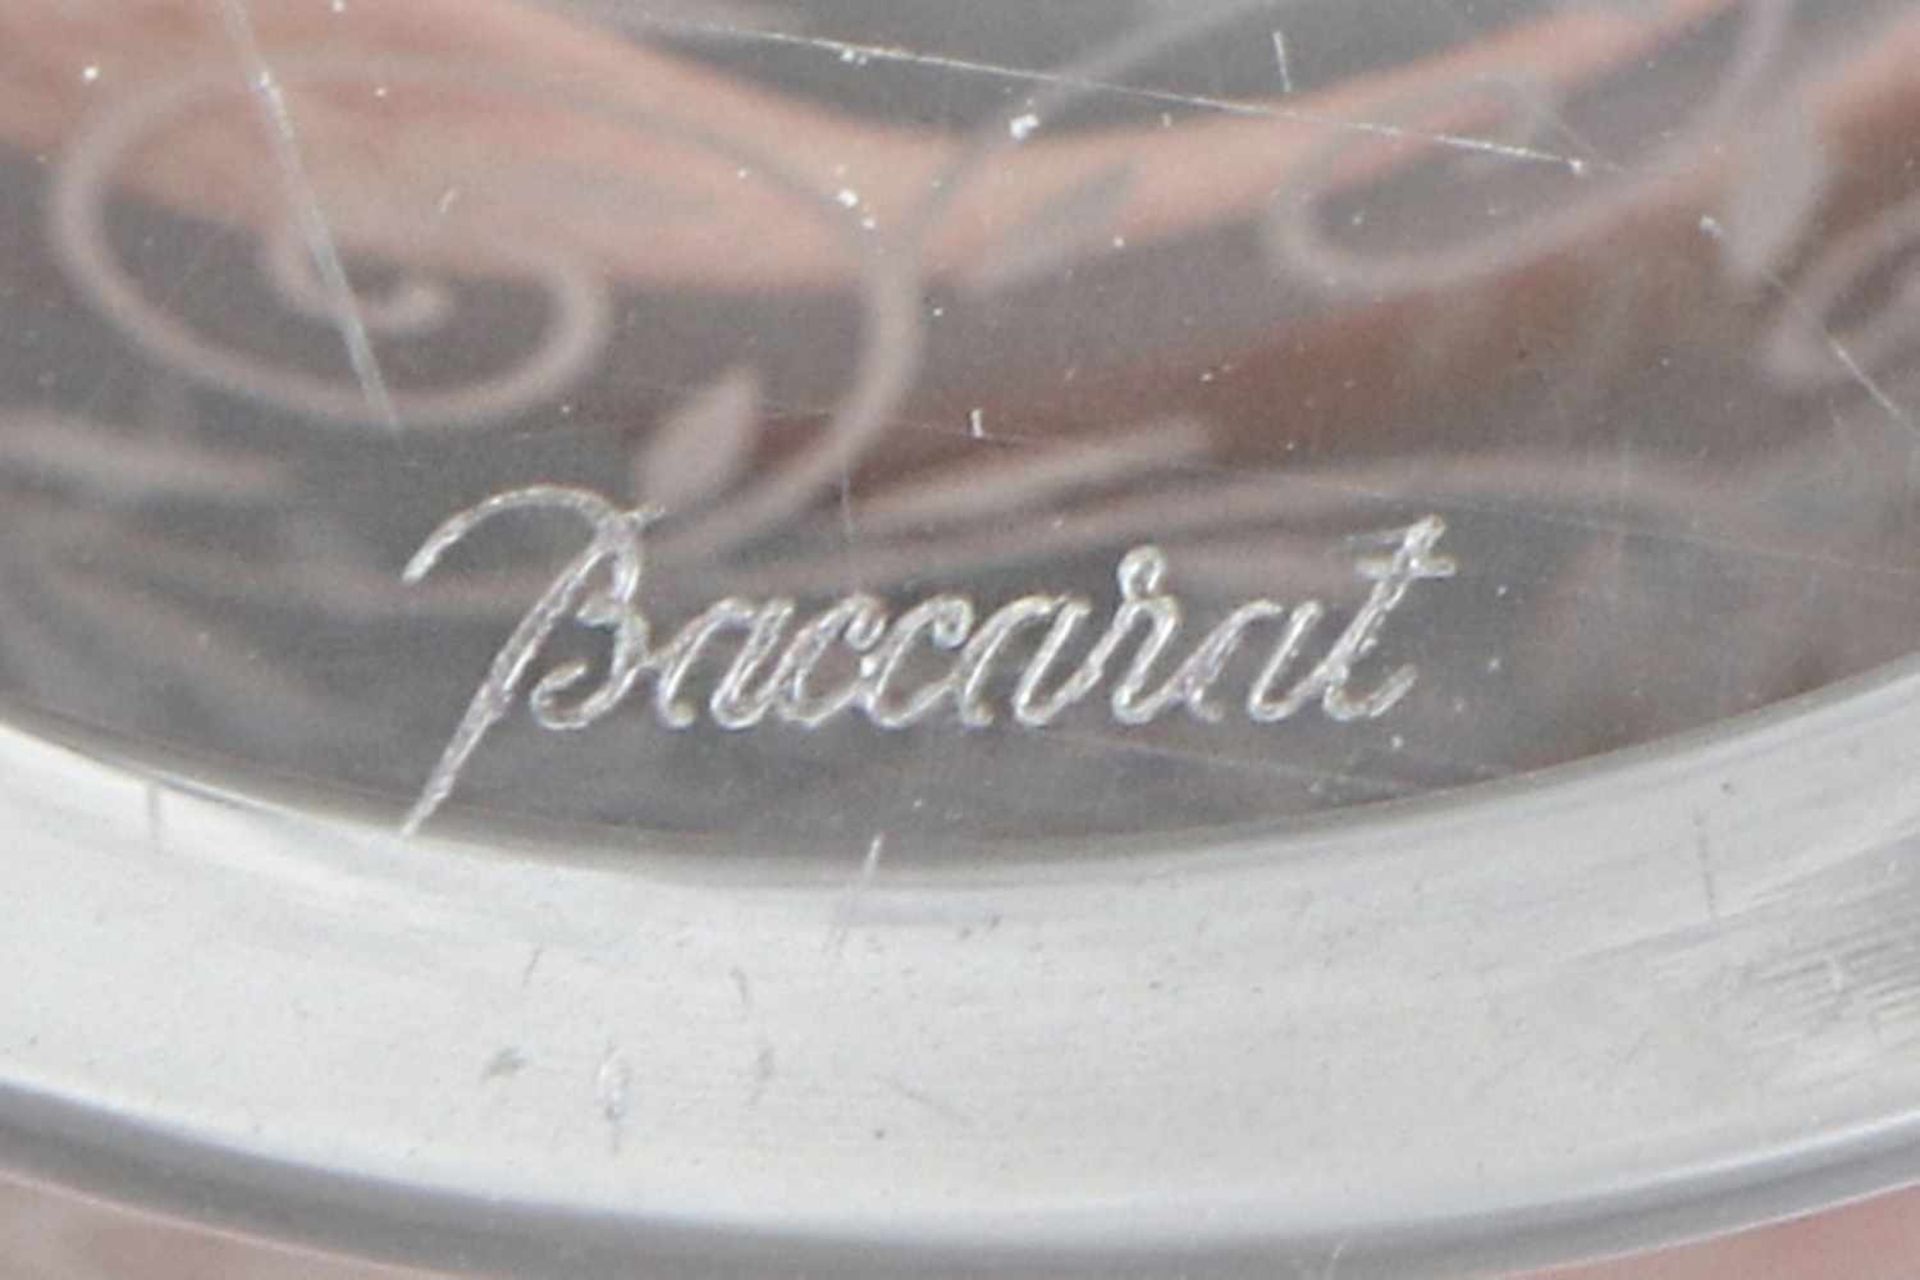 BACCARAT Kristallvase trichterförmiger Korpus, Ätzdekor mit Rosen-Ranken, Rundfuß, H ca. 18cm - Bild 3 aus 3